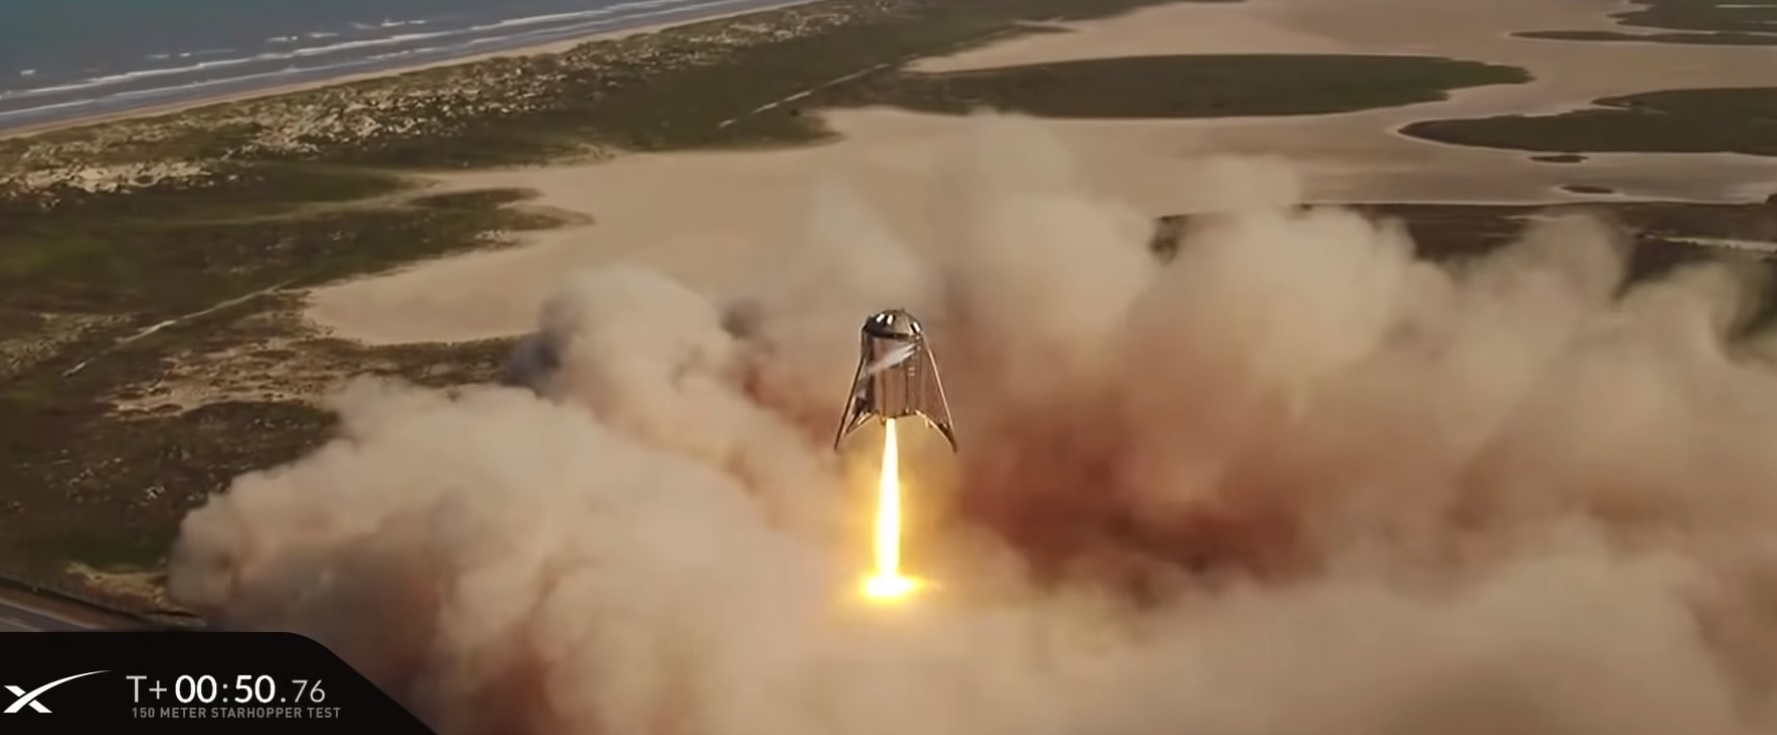 SpaceX провела летные испытания прототипа ракеты Starship — взлет на высоту 150 метров и мягкая посадка на площадку - 1